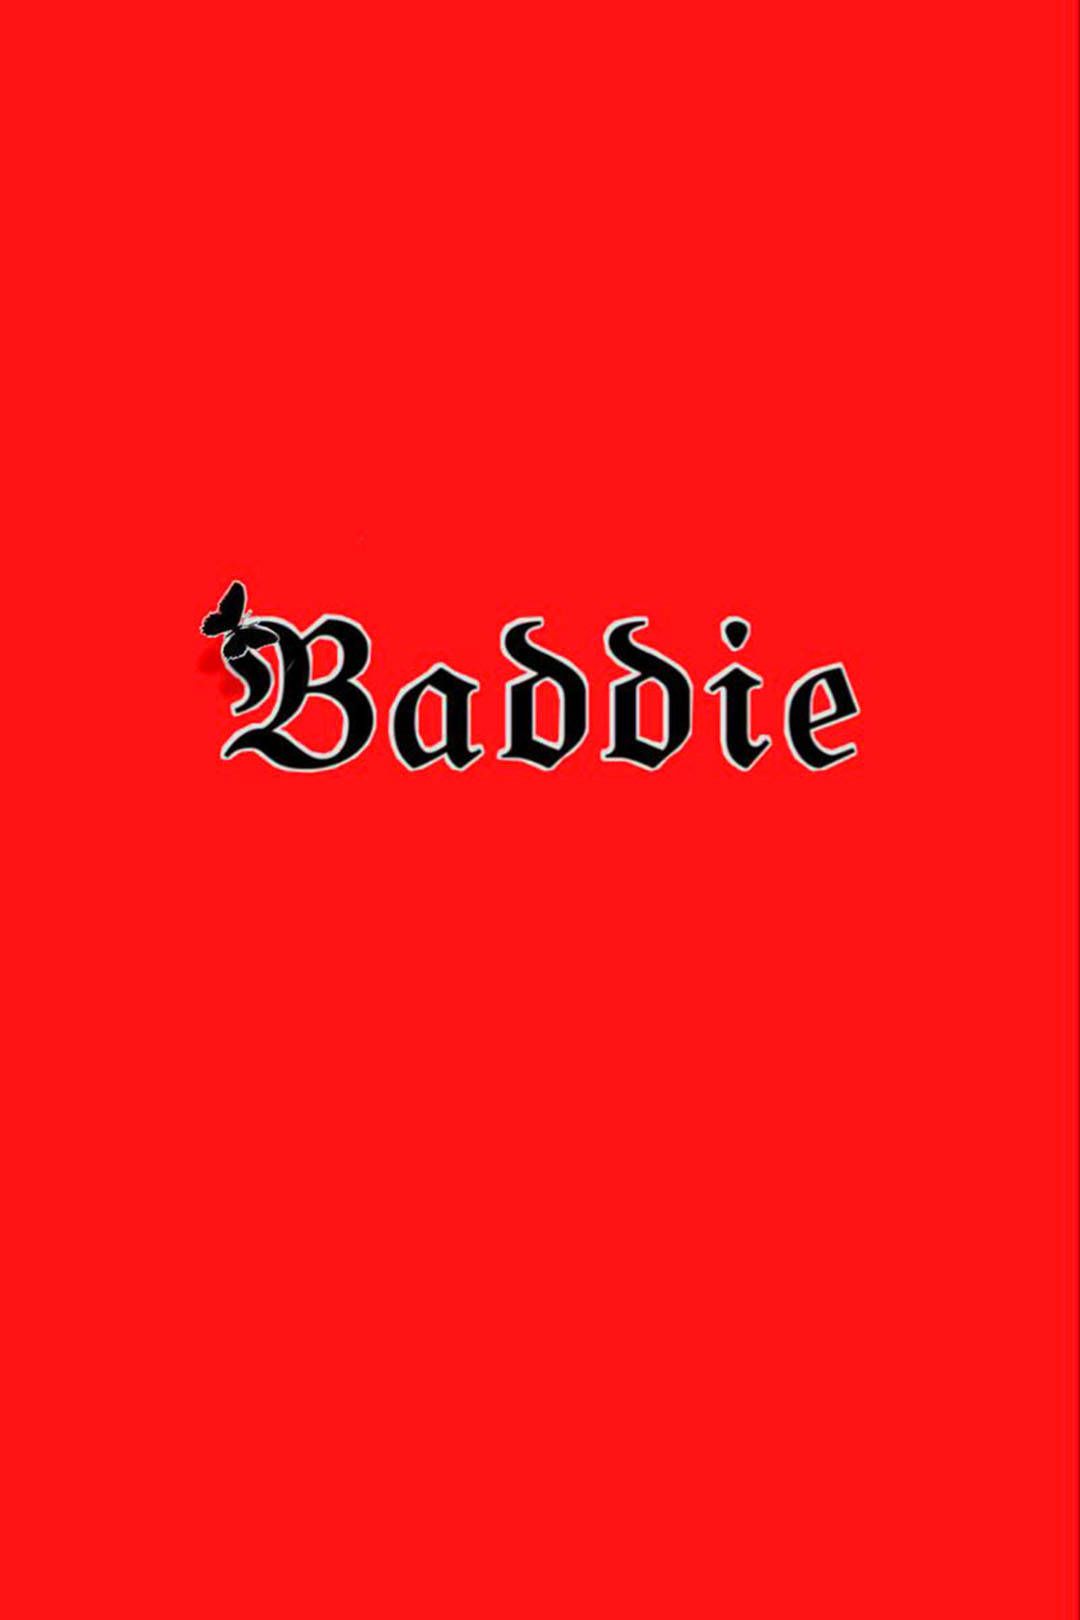 Free Red Baddie Wallpaper Downloads, Red Baddie Wallpaper for FREE